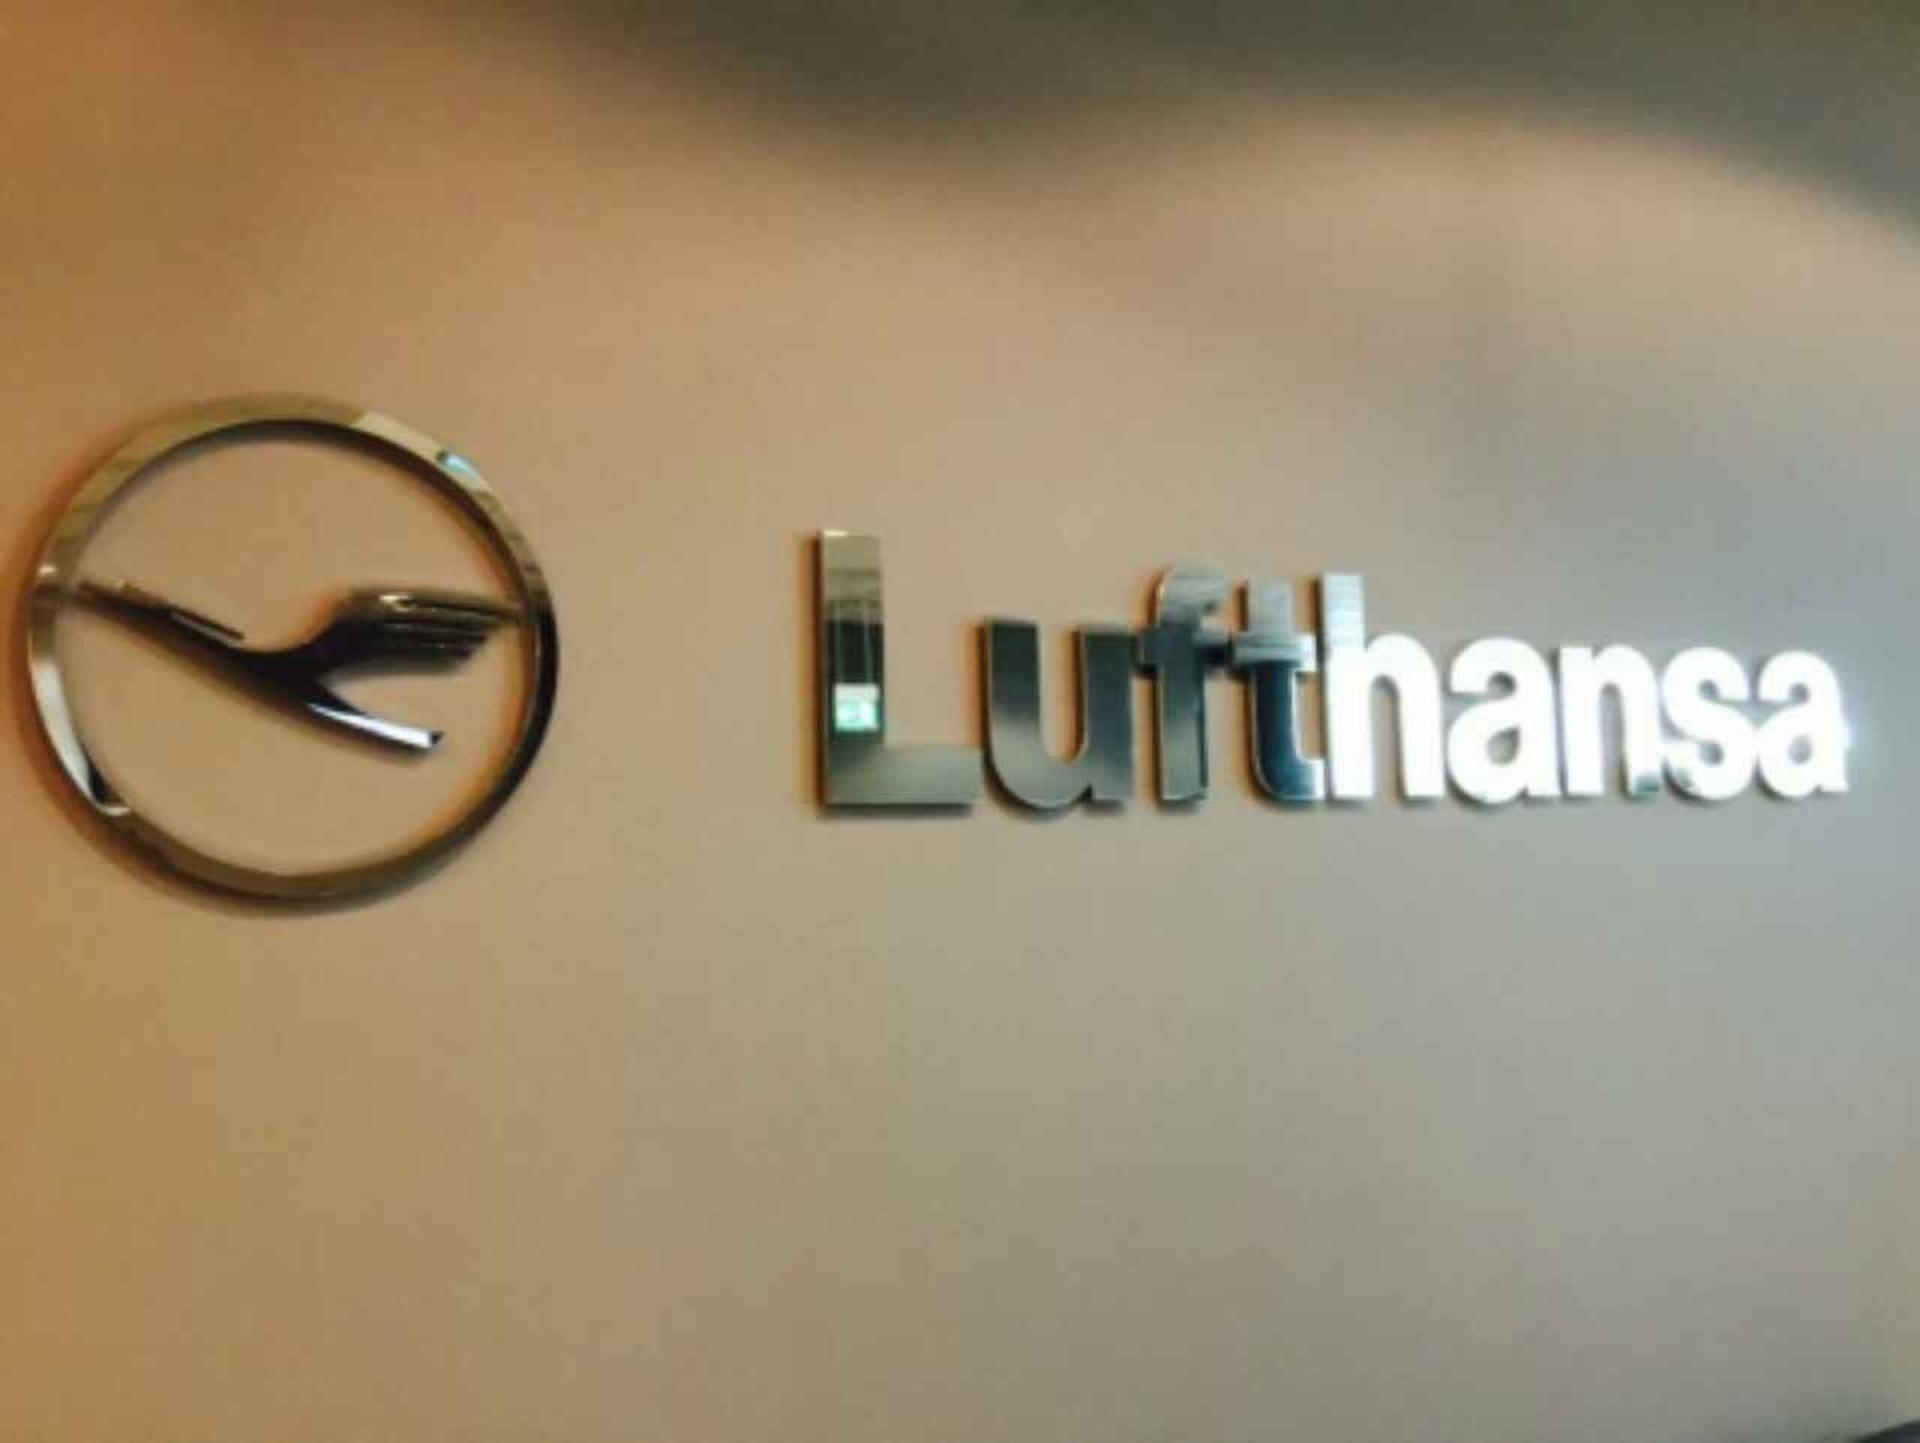 Lufthansa Business Lounge (Gate G28, Schengen) image 6 of 17